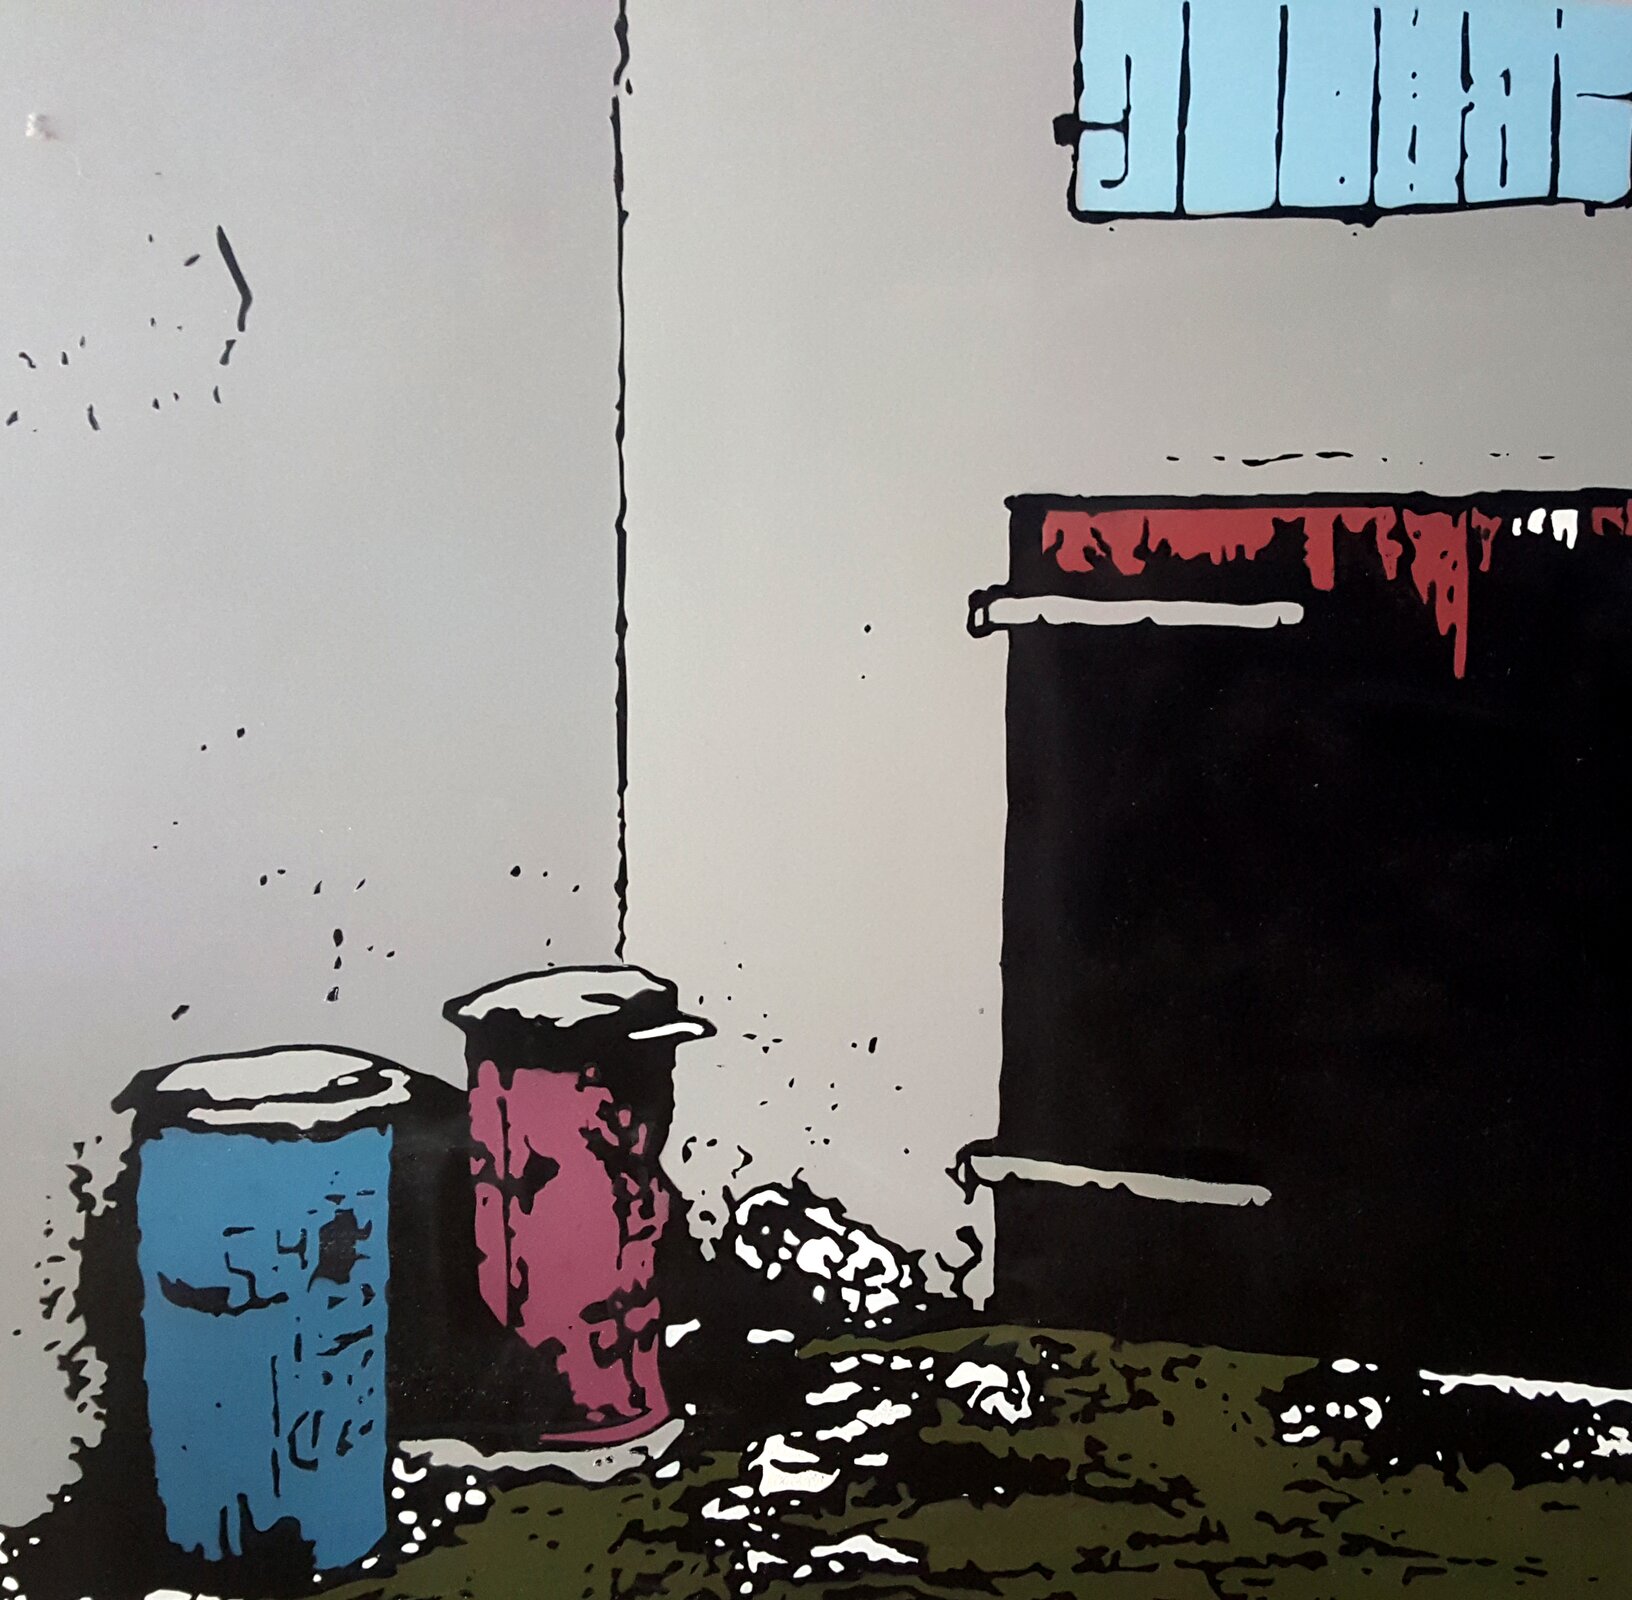 Zdjęcie ukazuje grafikę koszy na śmieci w kolorach niebieskim oraz różowym. W tle ukazane są czarne drzwi oraz szara ściana budynku.